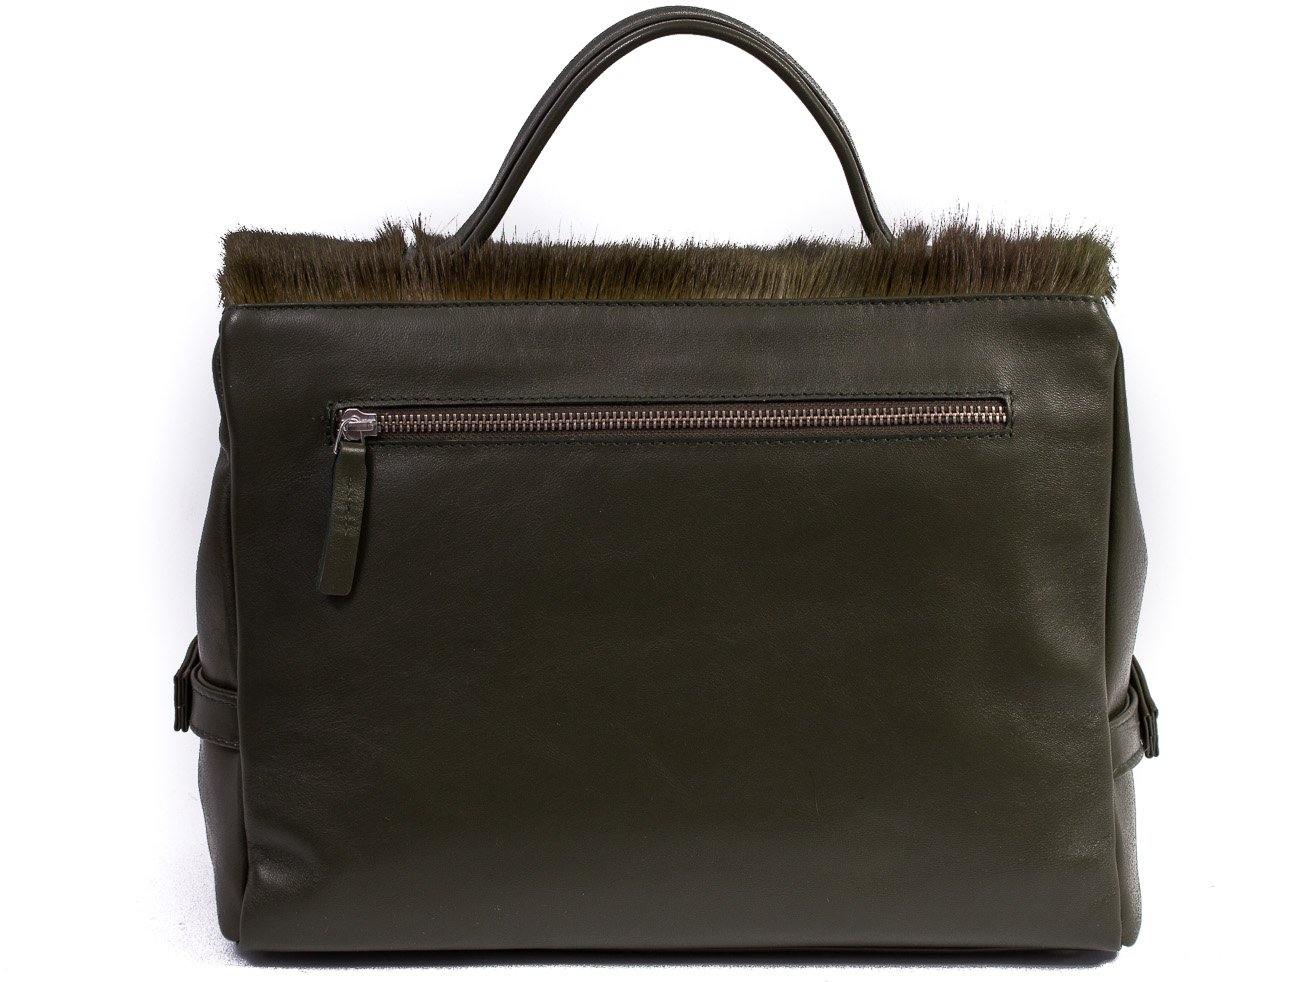 sherene melinda springbok hair-on-hide green leather smith tote bag Stripe back